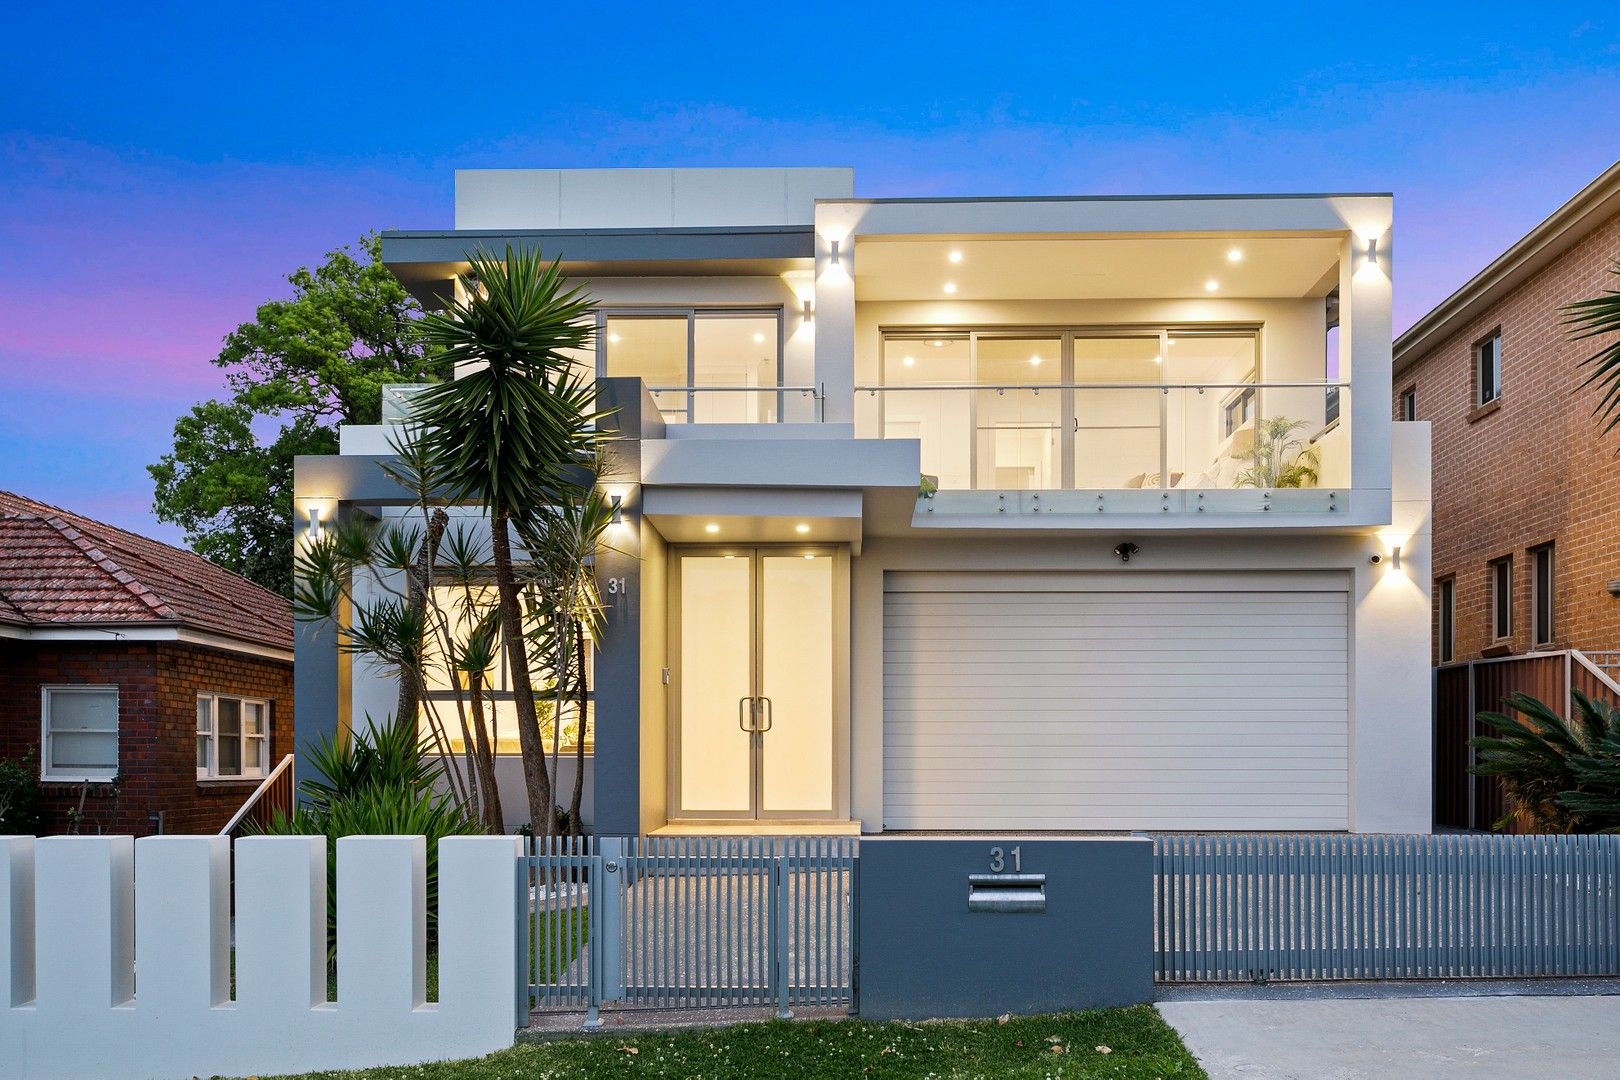 5 bedrooms House in 31 Warraba Street HURSTVILLE NSW, 2220